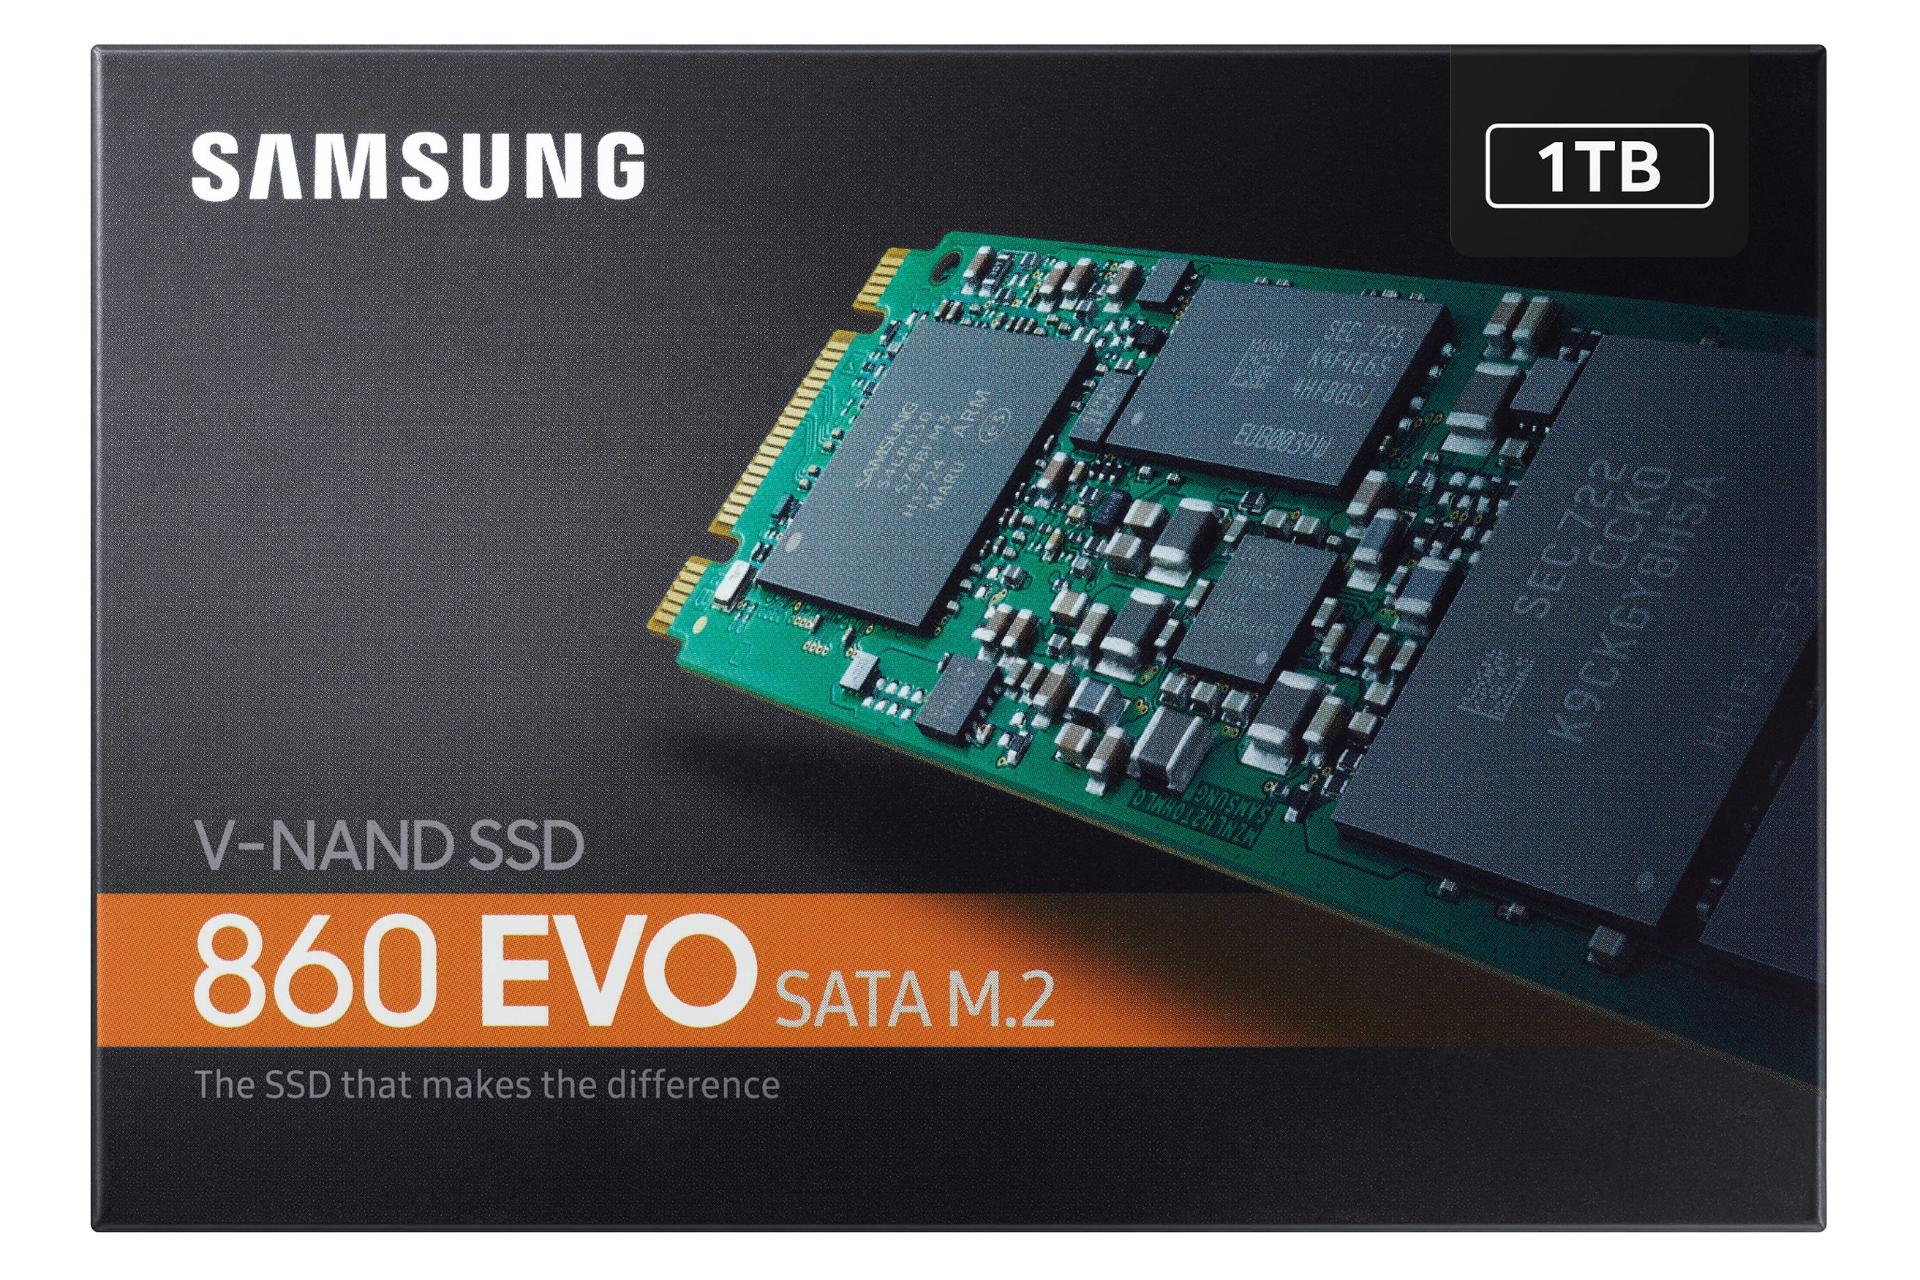 جعبه SSD سامسونگ Samsung 860 EVO SATA M.2 1TB ظرفیت 1 ترابایت